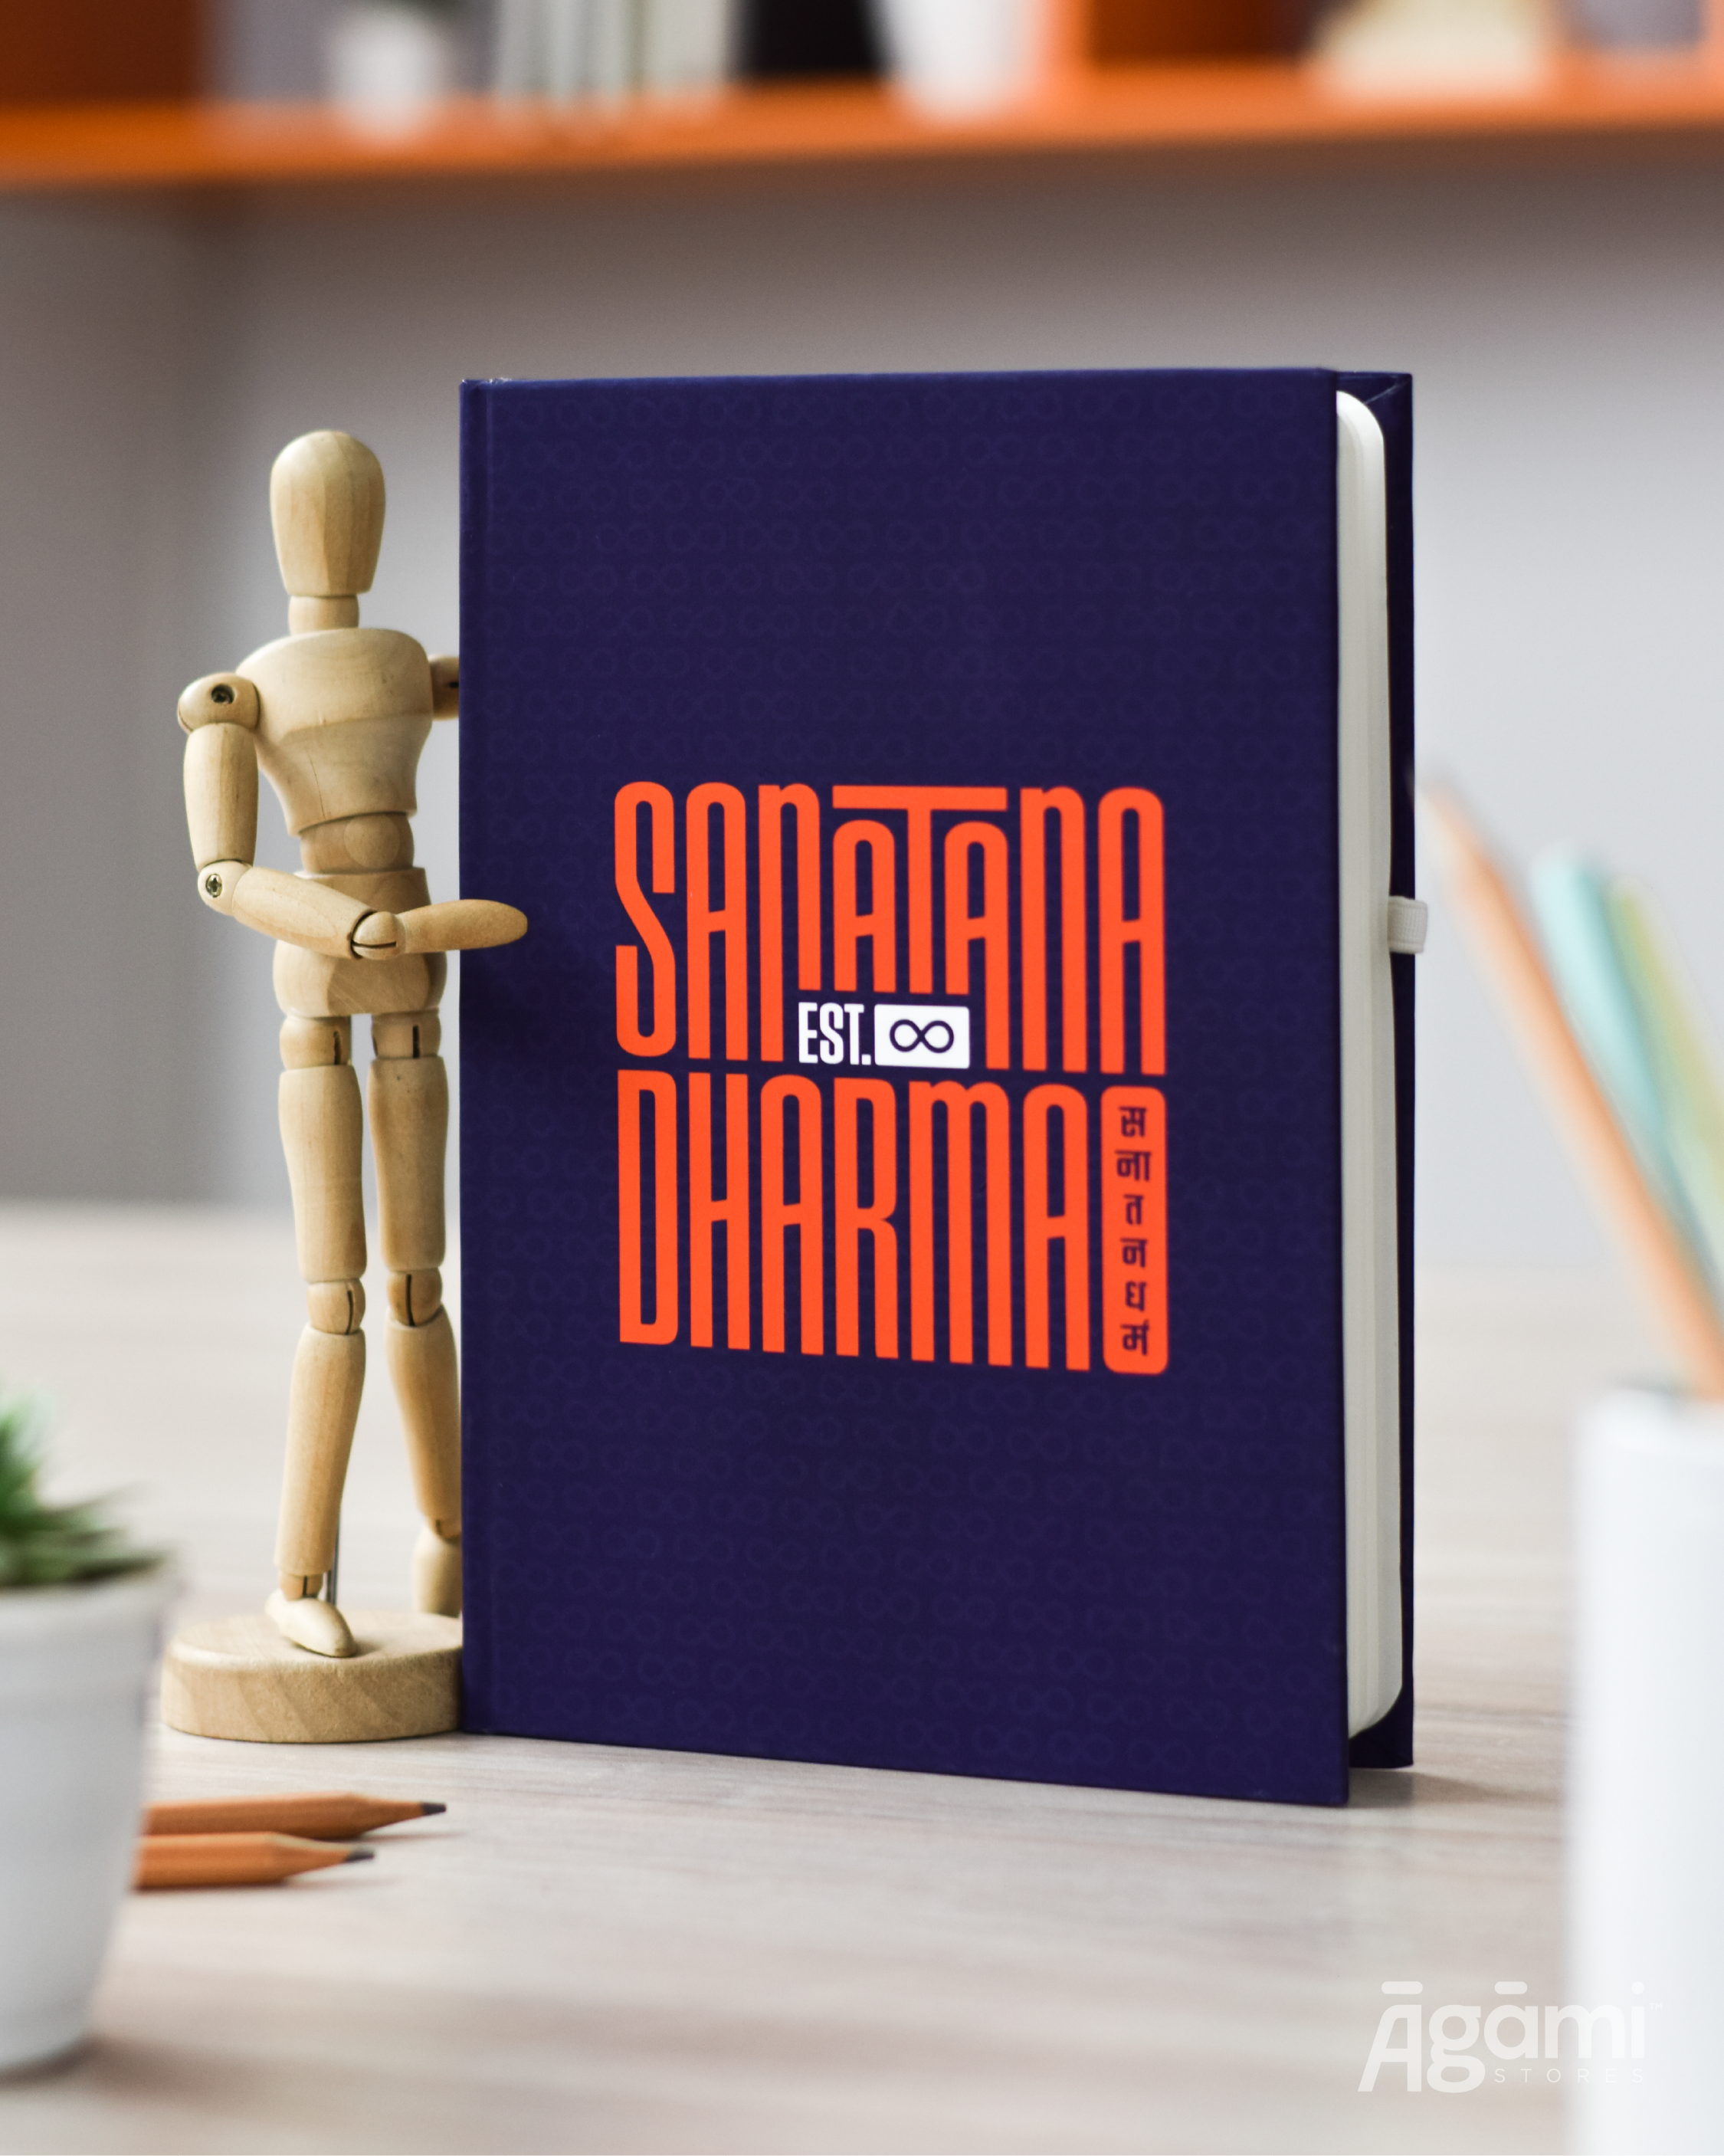 Sanatana Dharma Emblem | Laptop & Mobile Sticker